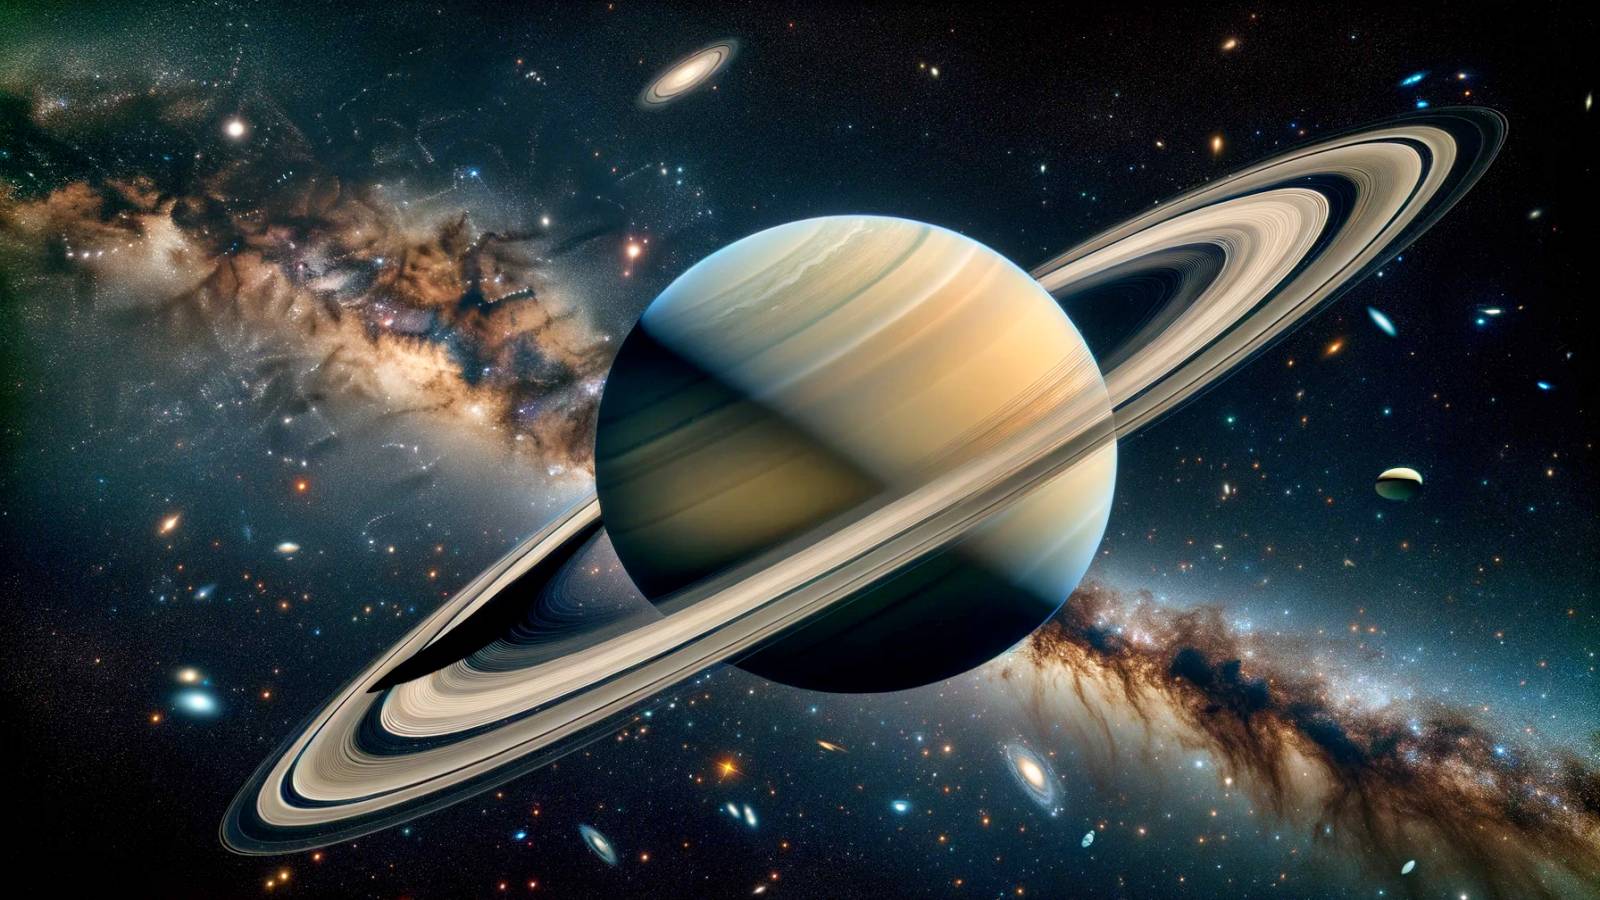 Les anneaux de la planète Saturne disparaîtront en 2025, découverts par des chercheurs de la NASA